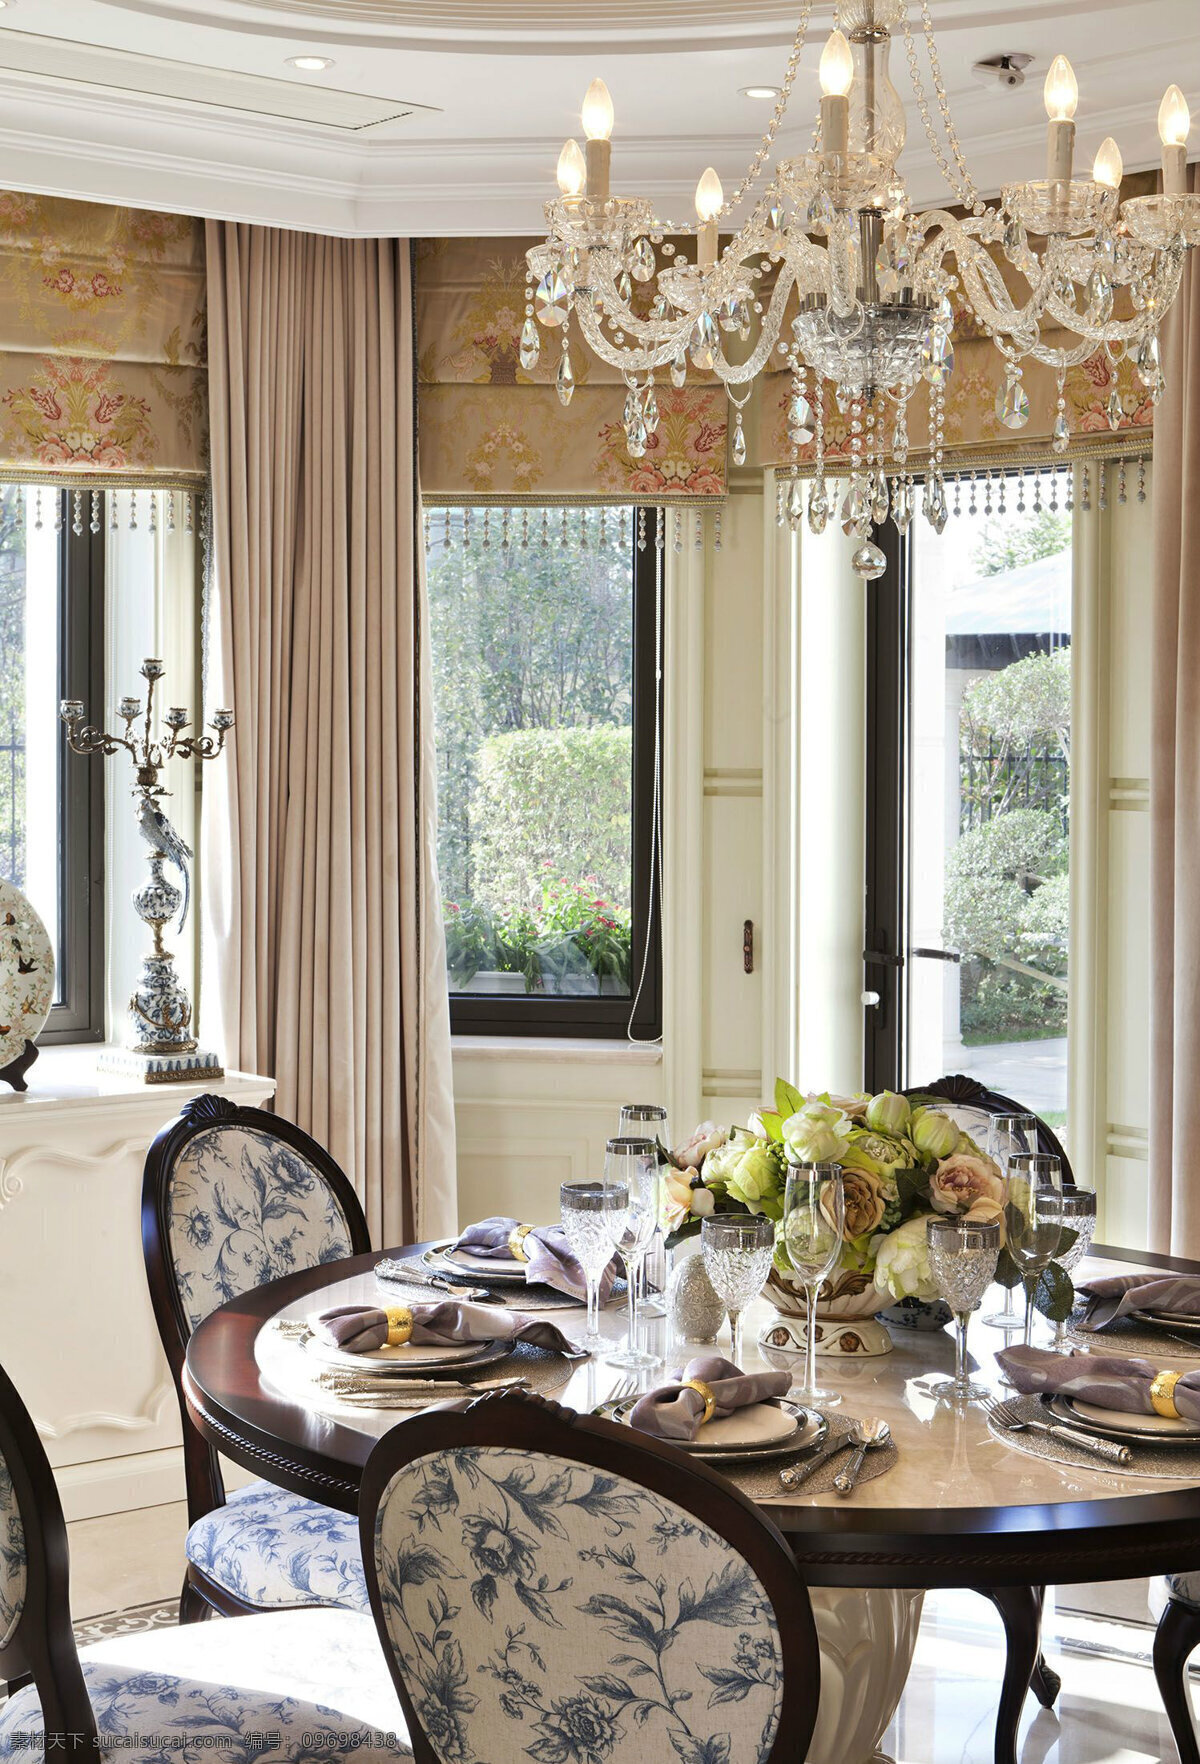 欧式 餐厅 水晶 吊灯 装修 效果图 复古餐桌 灰色窗帘 窗户 装饰物品